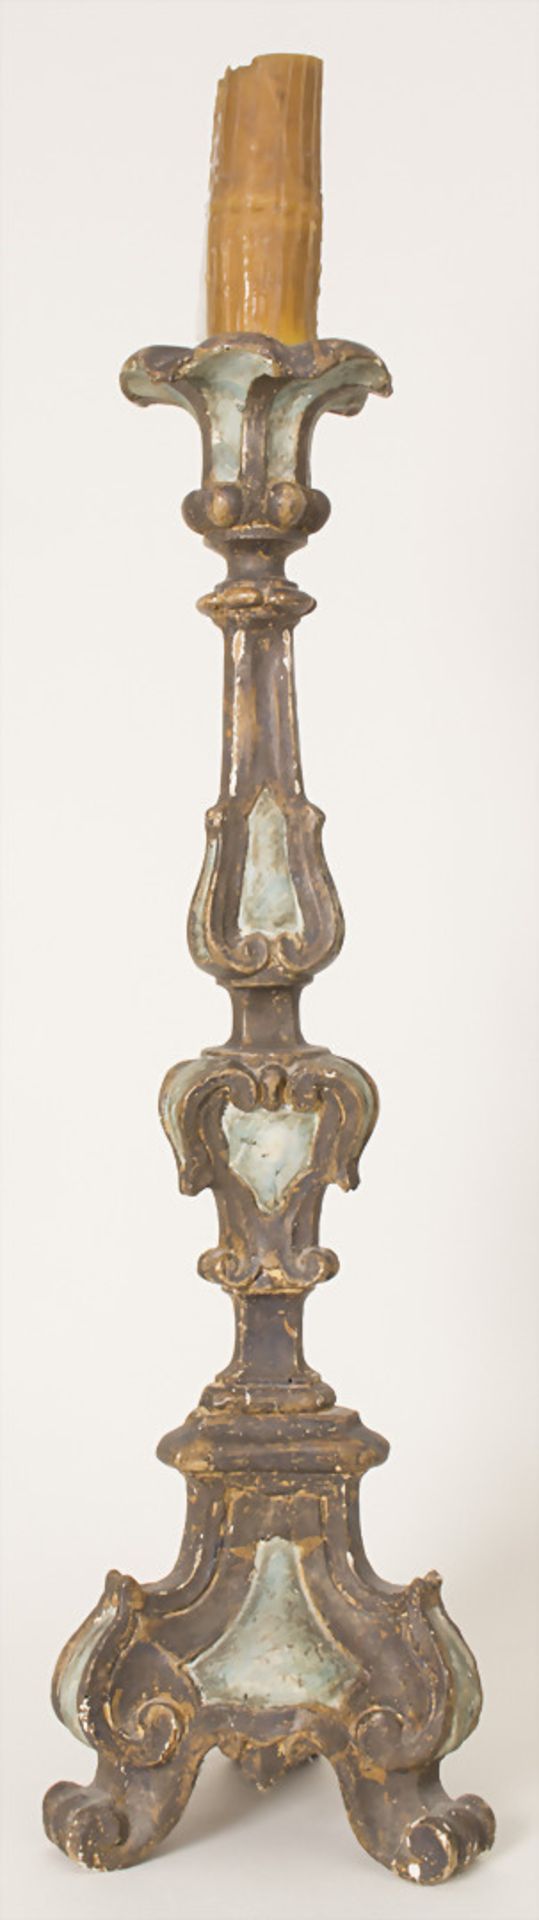 Altarleuchter / An altar candlestick, süddeutsch 18. Jh.Material: Holz, geschnitzt, farbig - Bild 3 aus 7